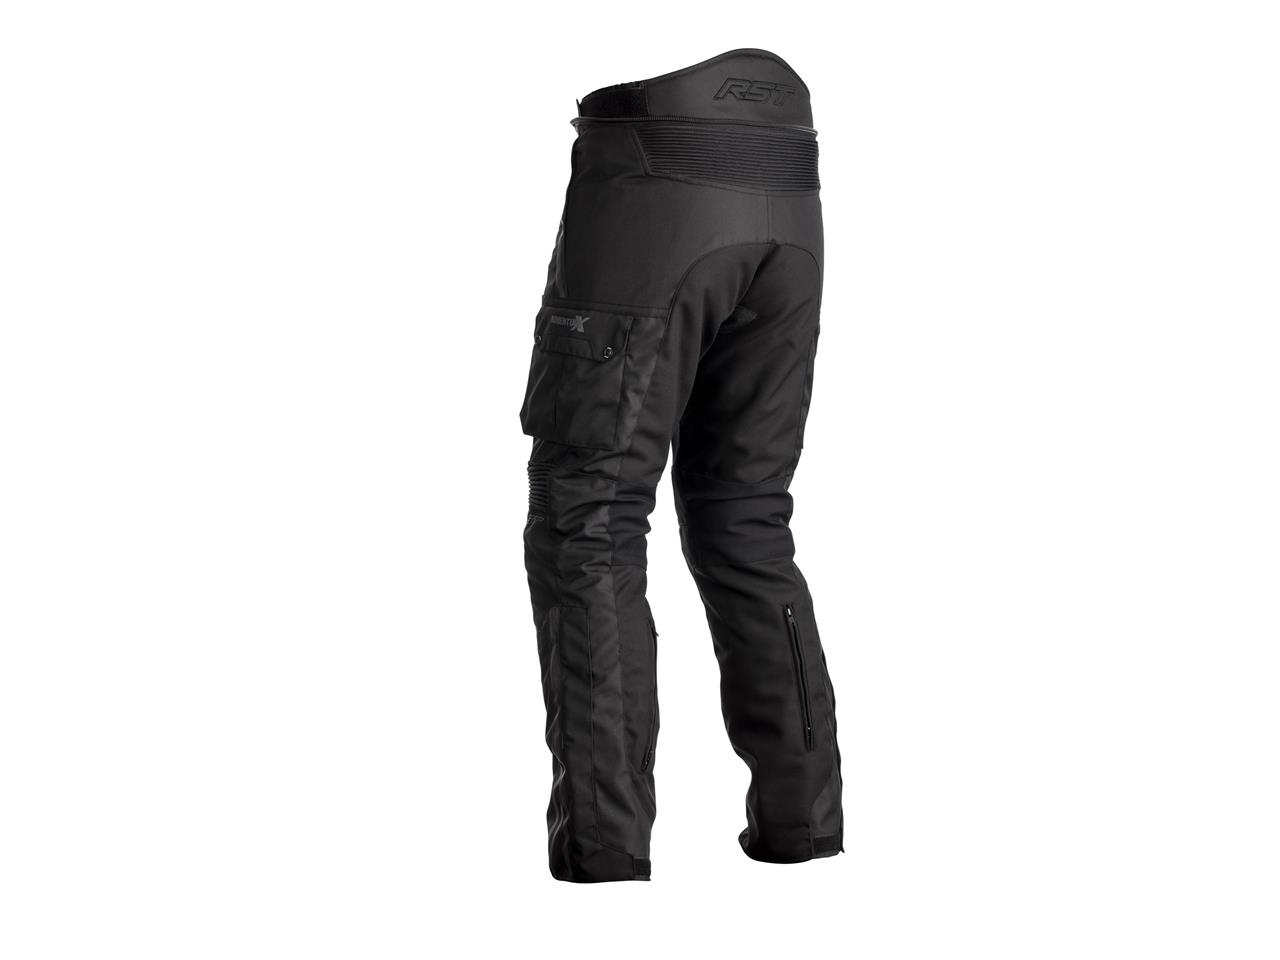 Pantalon homme RST Adventure-X CE textile noir